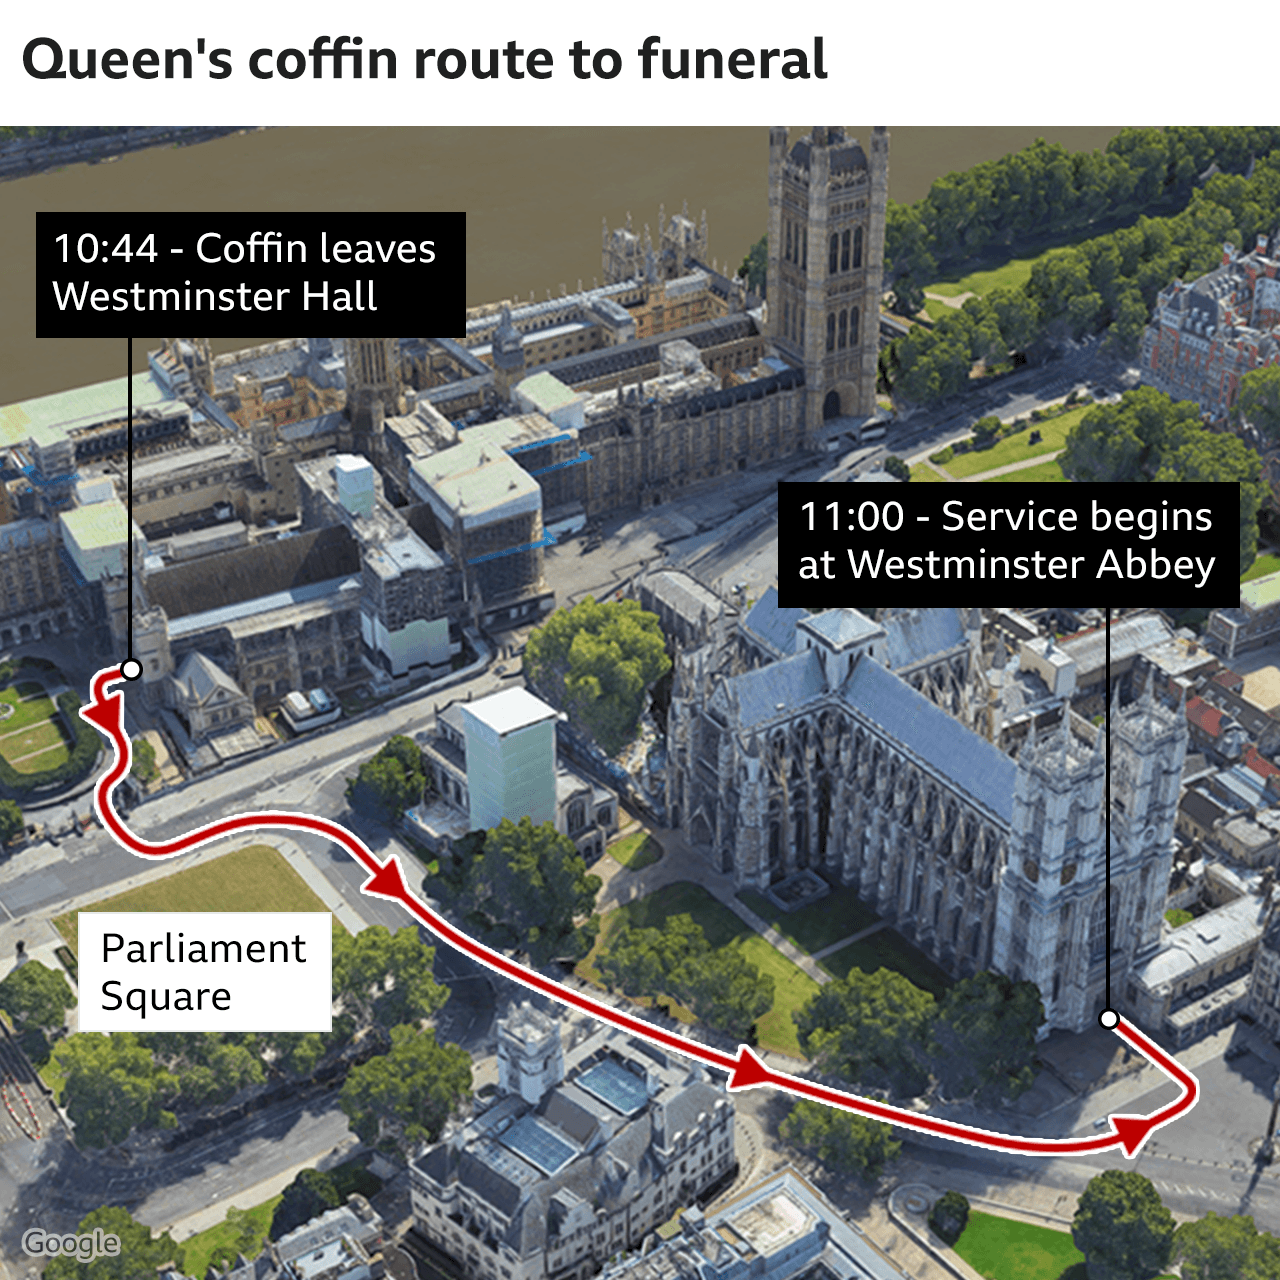 地圖顯示女王的棺材將從威斯敏斯特大廳到威斯敏斯特教堂的路線